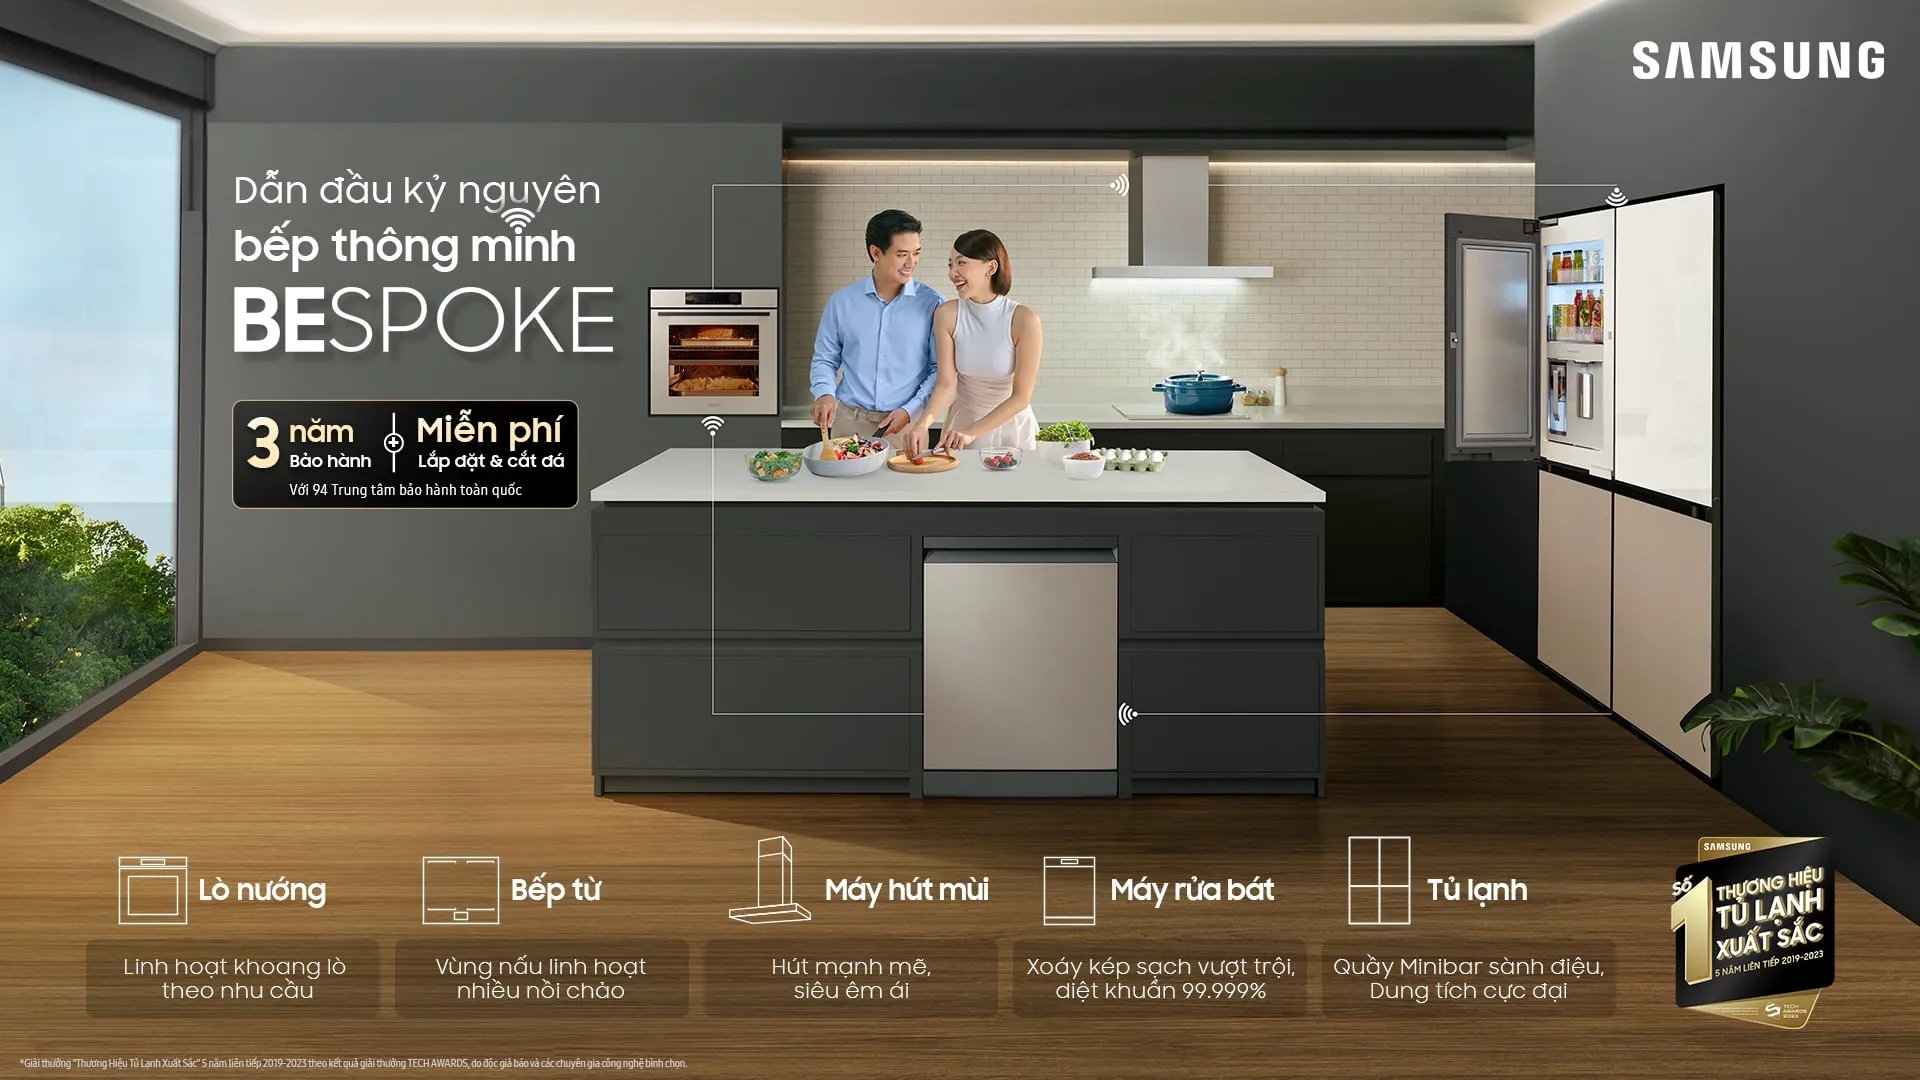 Bộ sưu tập bếp Samsung Bespoke: Giải pháp bếp thông minh cho cuộc sống hiện đại